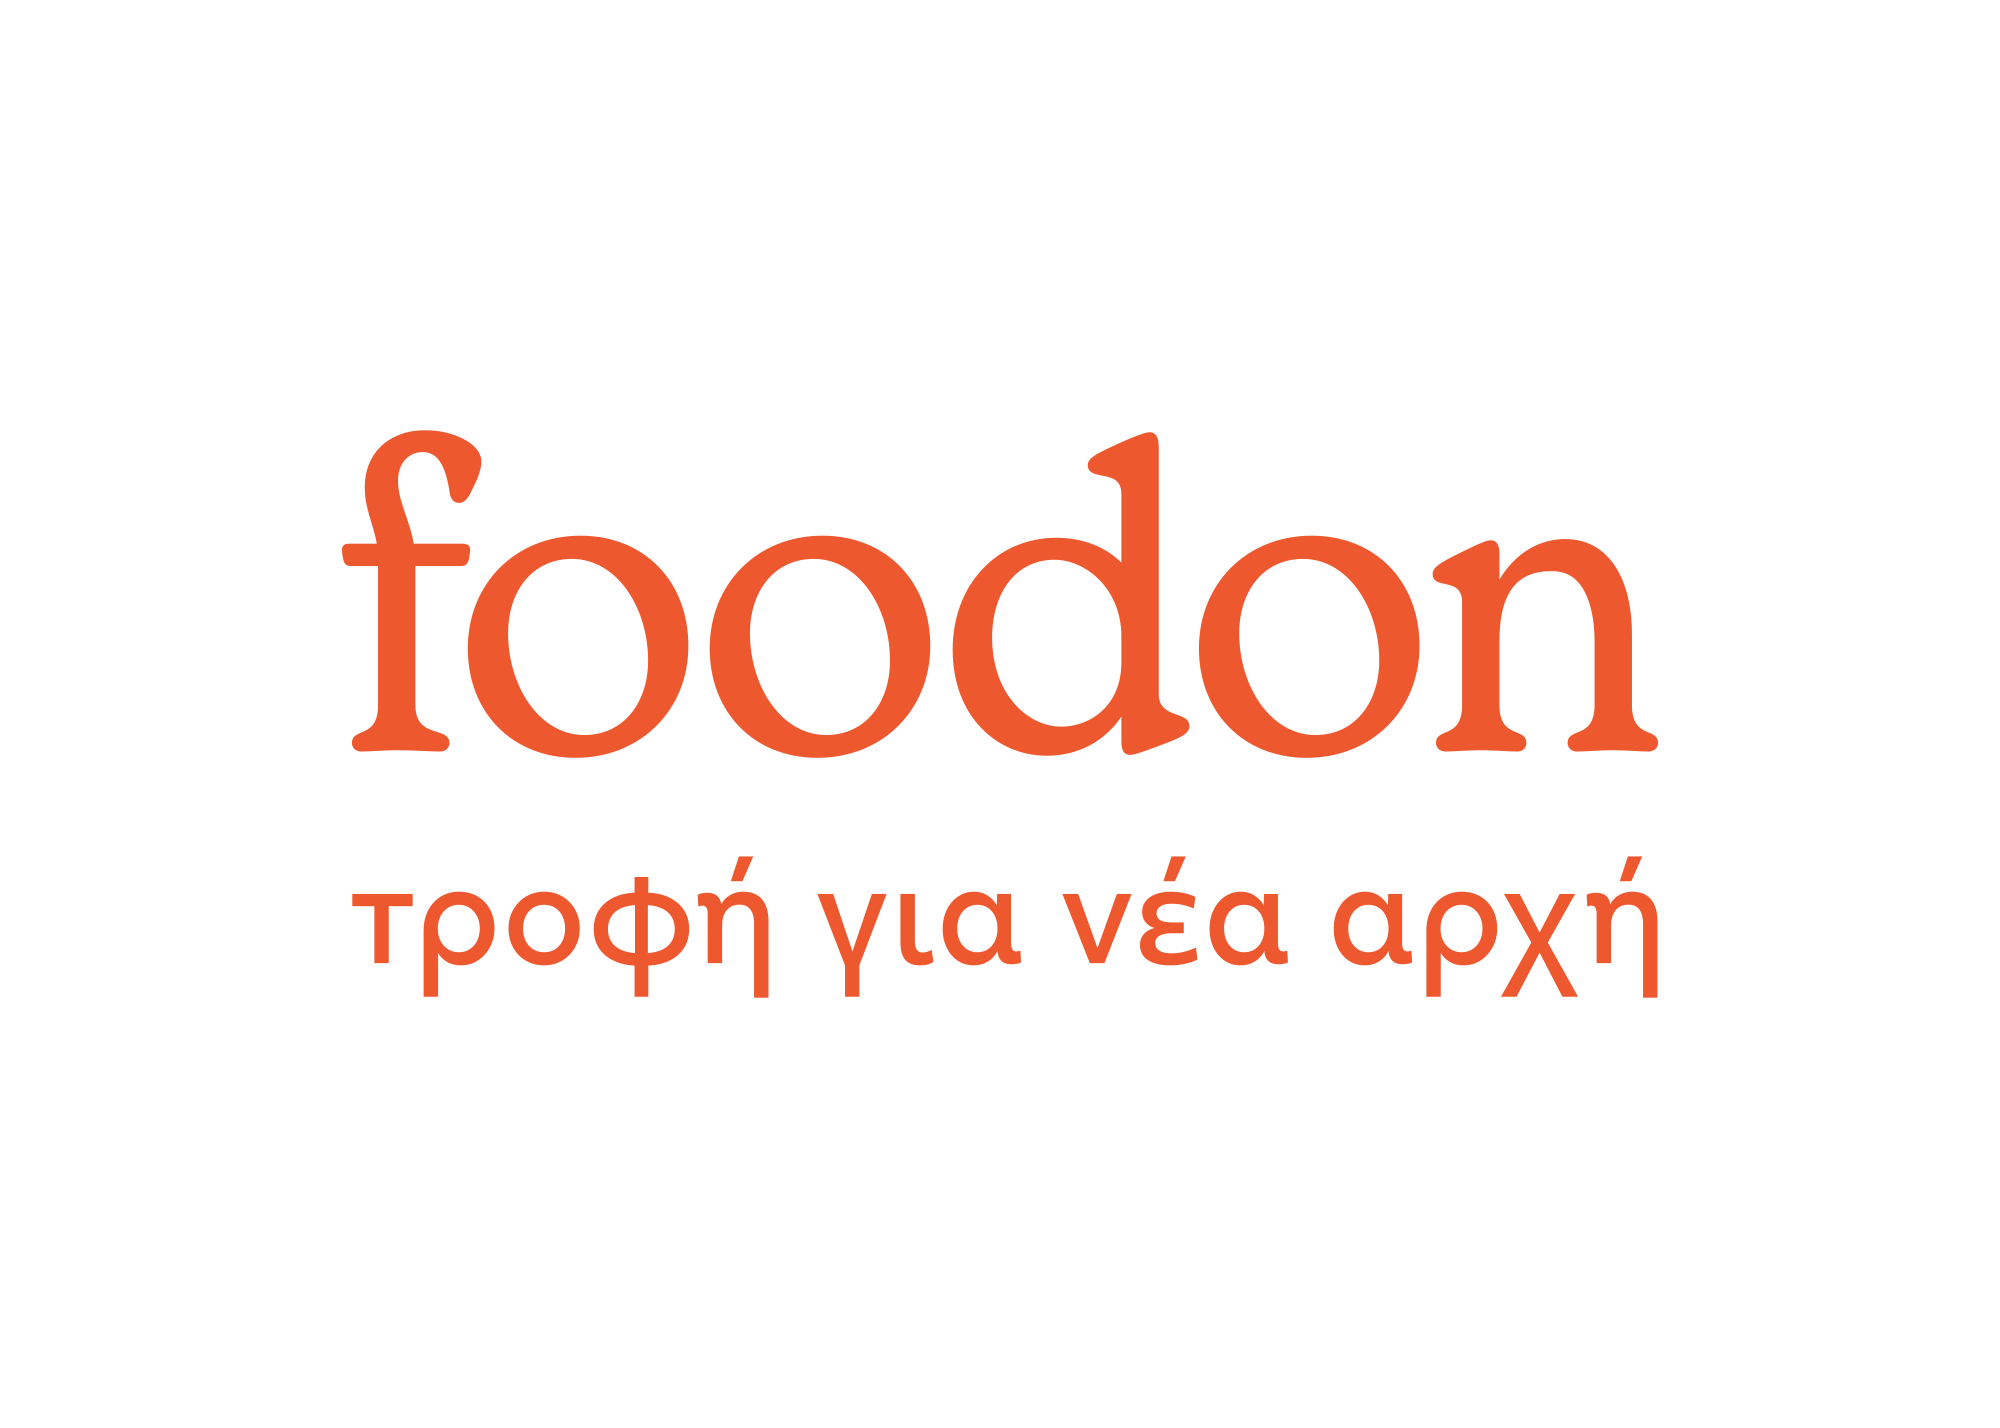 Foodon